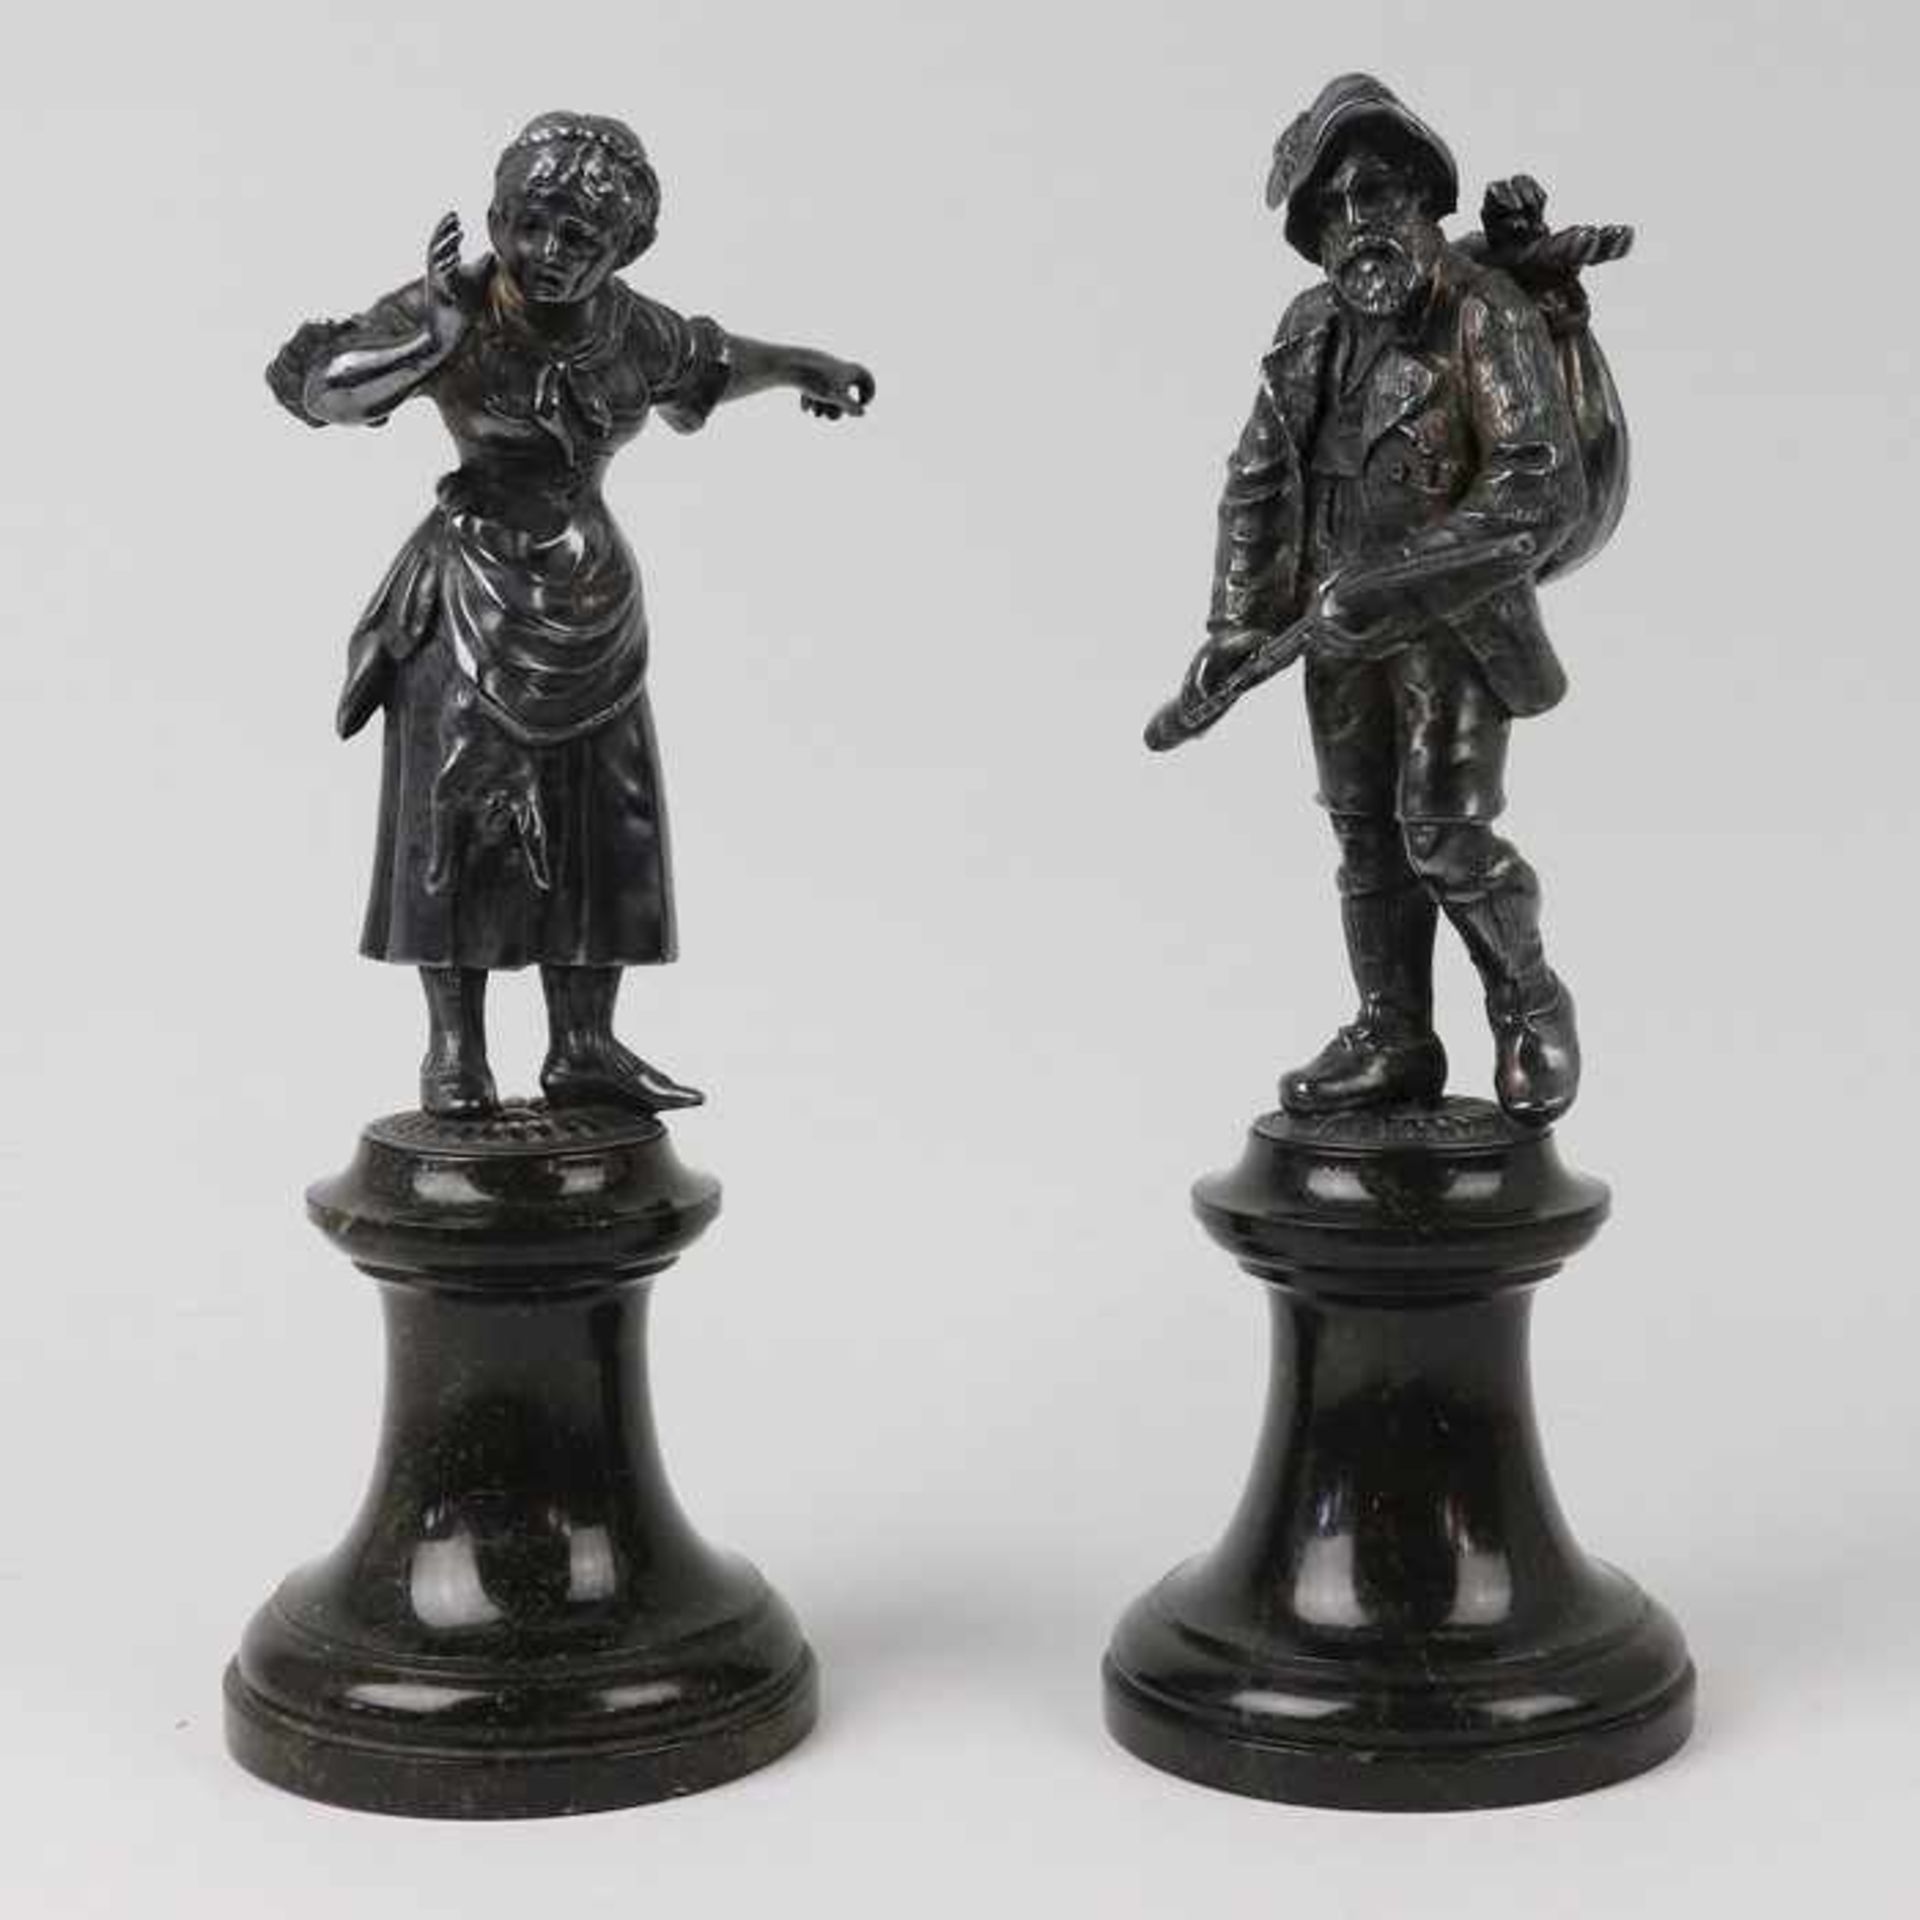 Figurenpaarum 1910/20, Metall, versi., 2 vollplastische Figuren, ein Jäger m. Beute ein Gewehr in